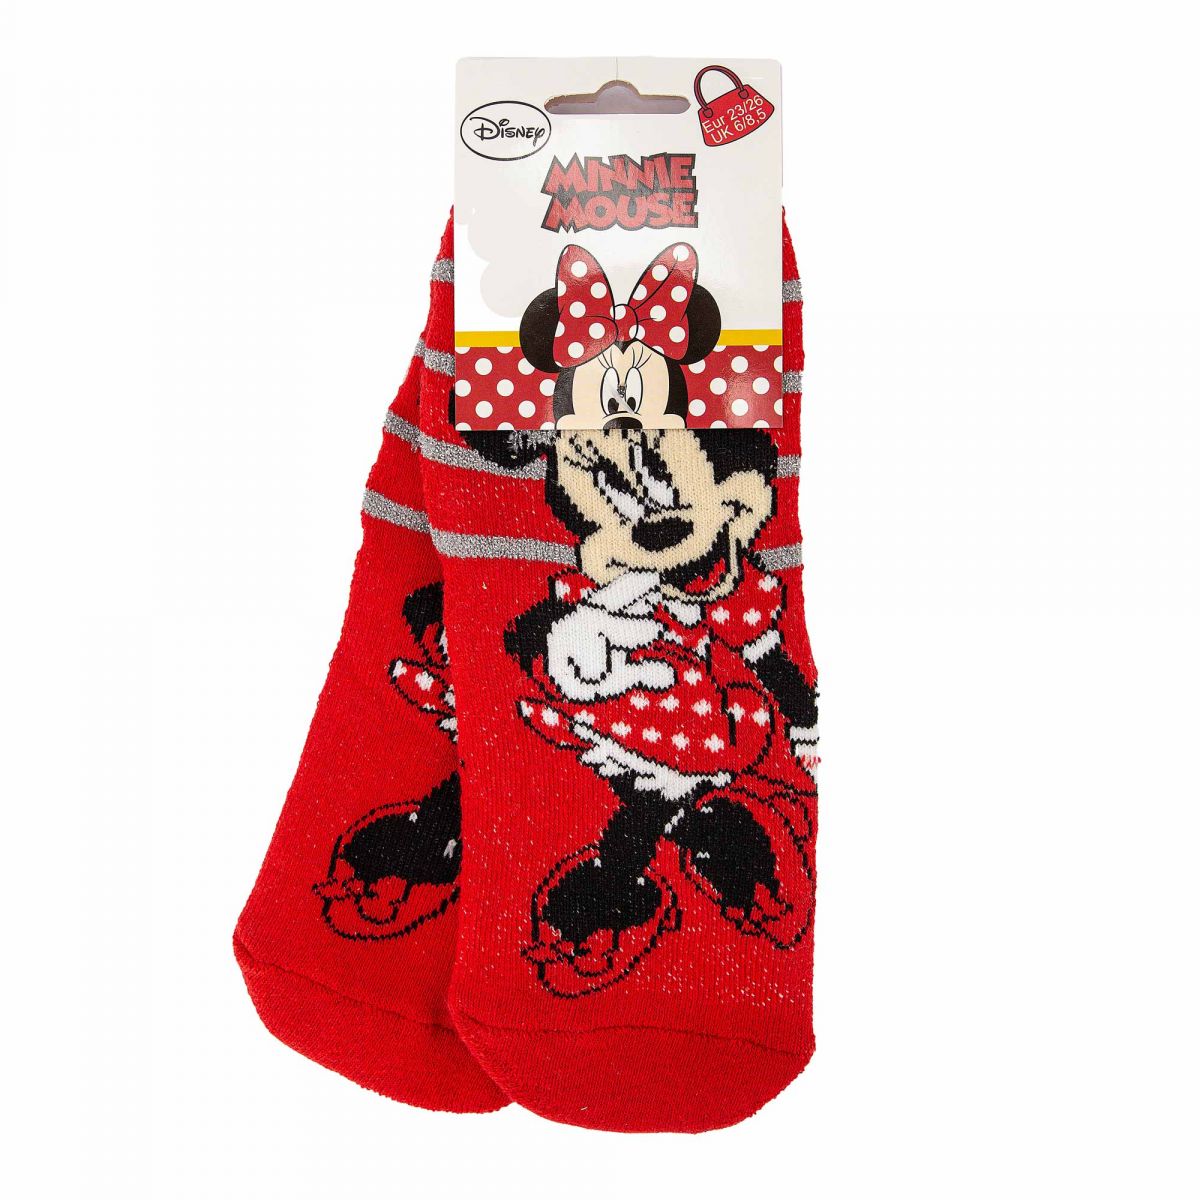 Disney Lot de 5 paires de chaussettes Minnie Mouse La Reine des neiges pour fille Taille standard Coton majoritaire 70% coton 